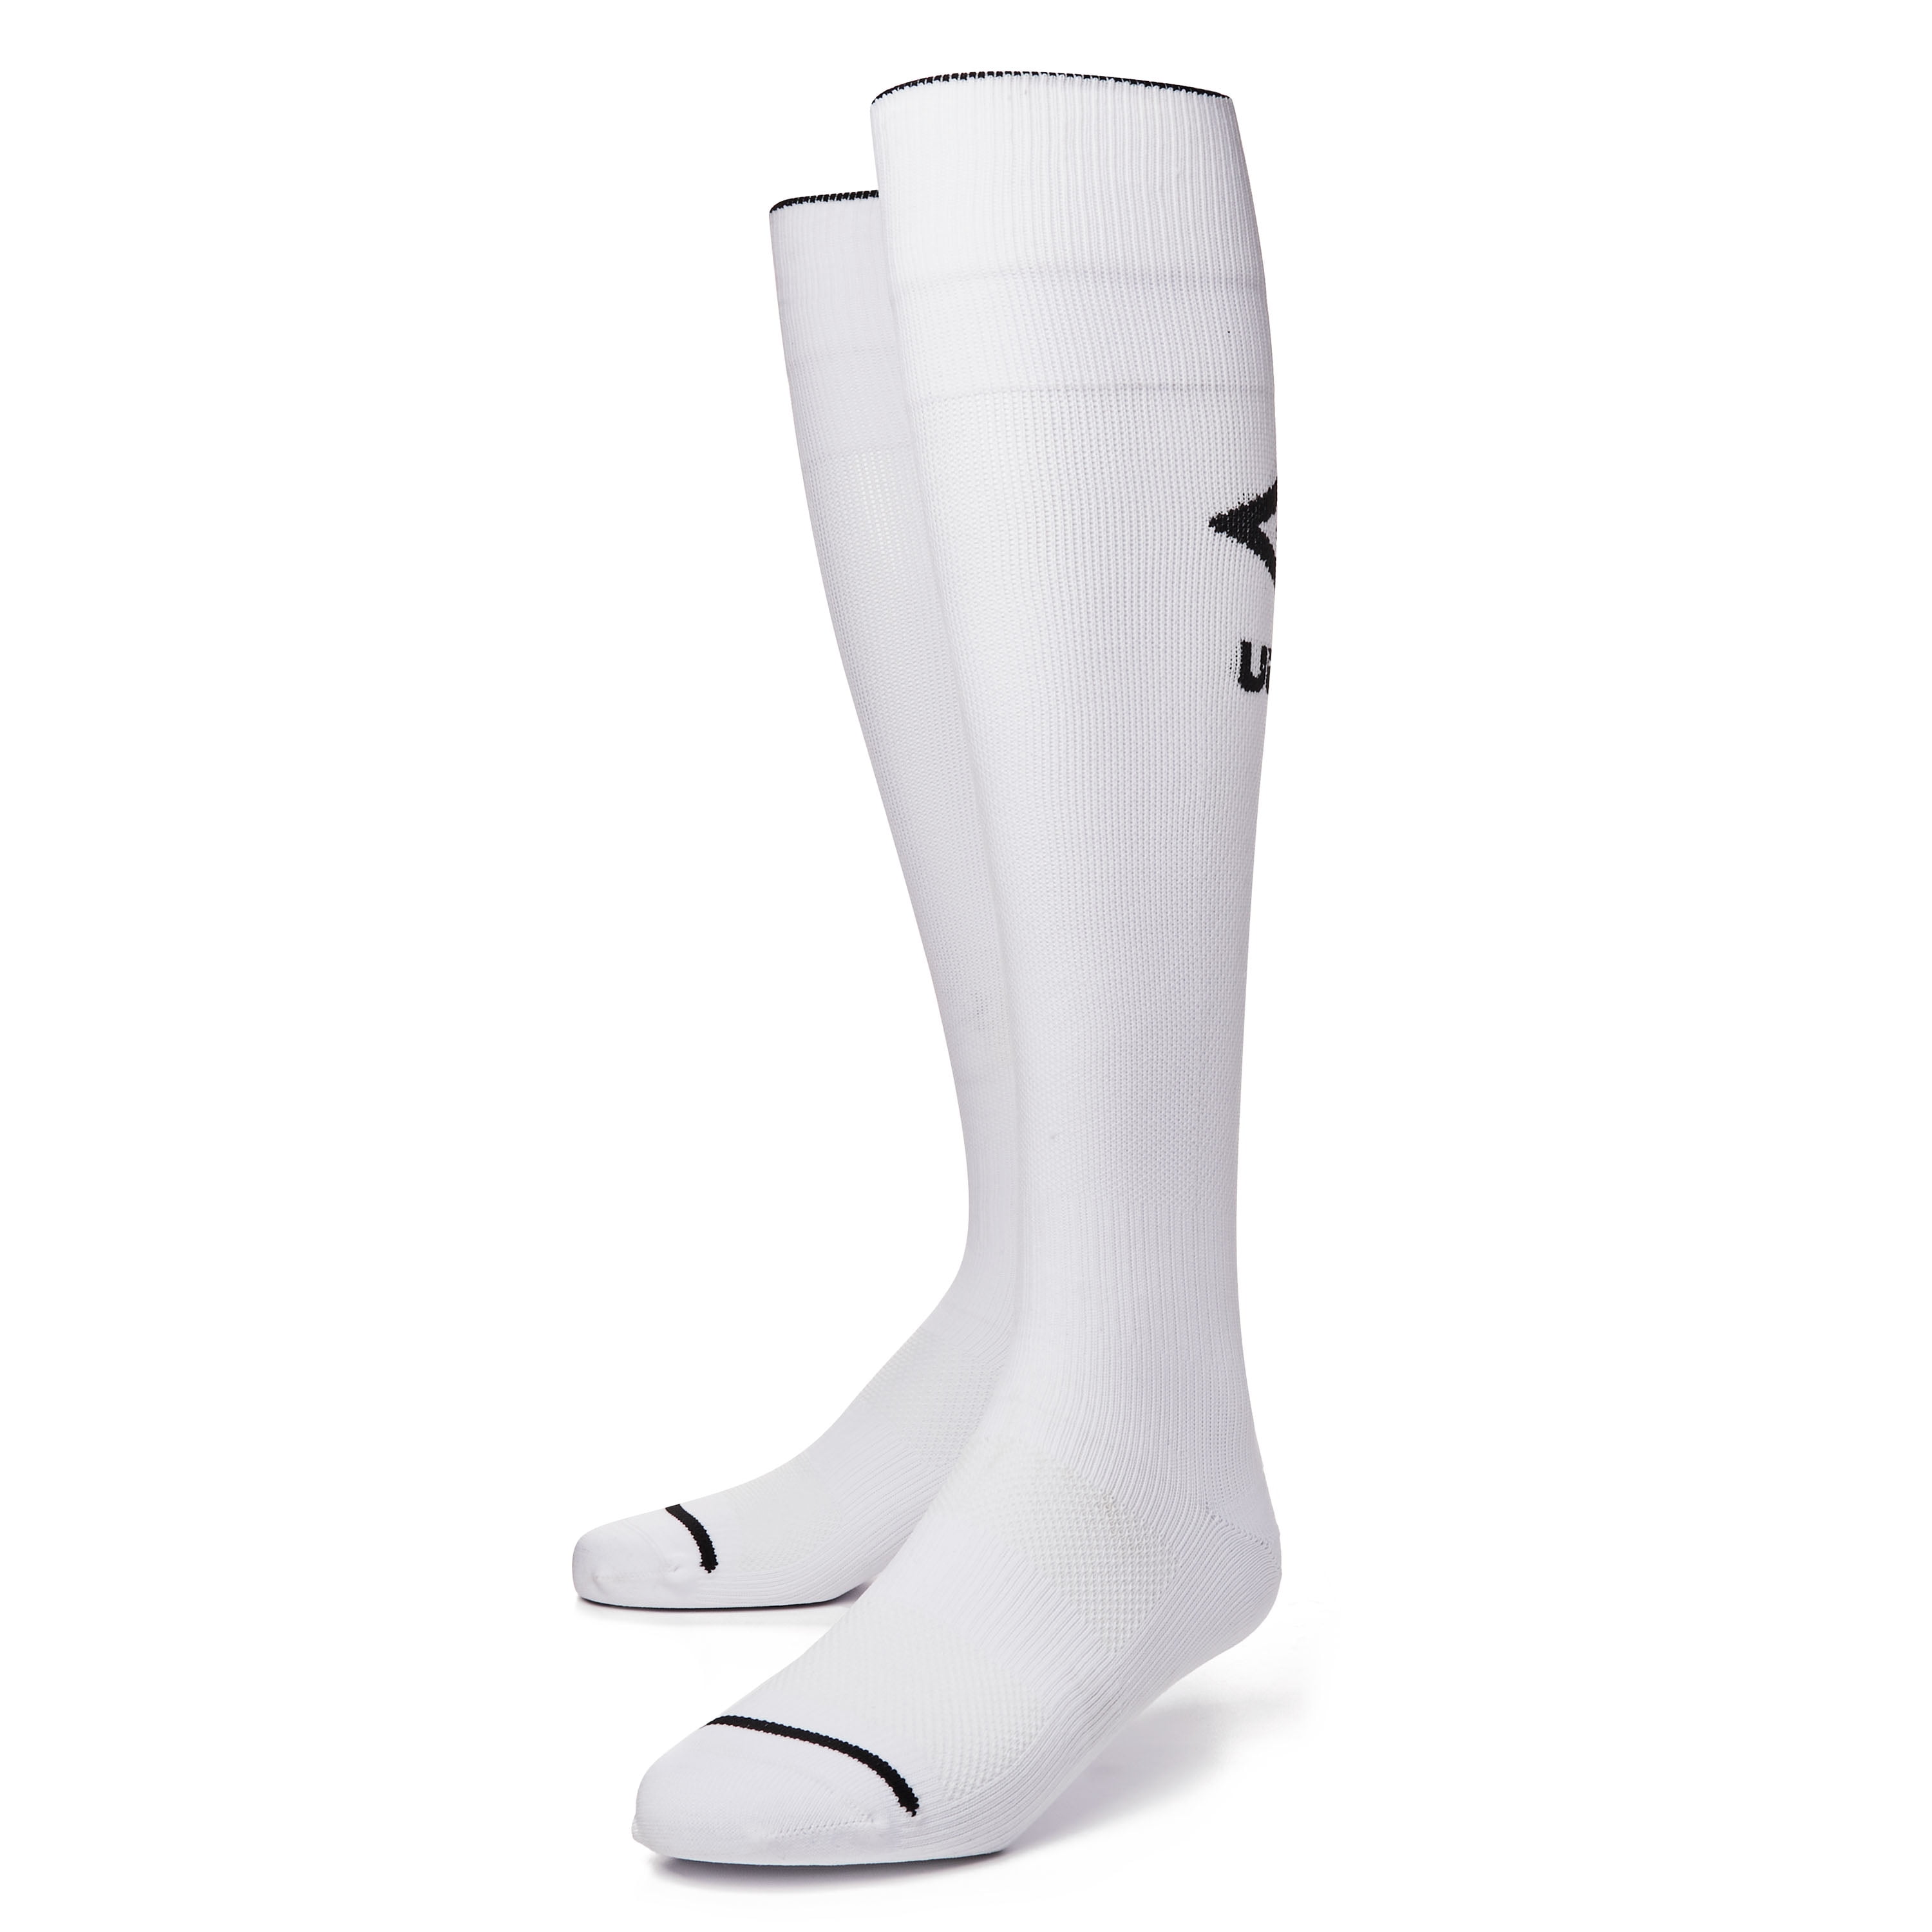 Wortel Dom zoet Umbro Peewee Boys & Girls Soccer Socks, White 1 Pack - Walmart.com